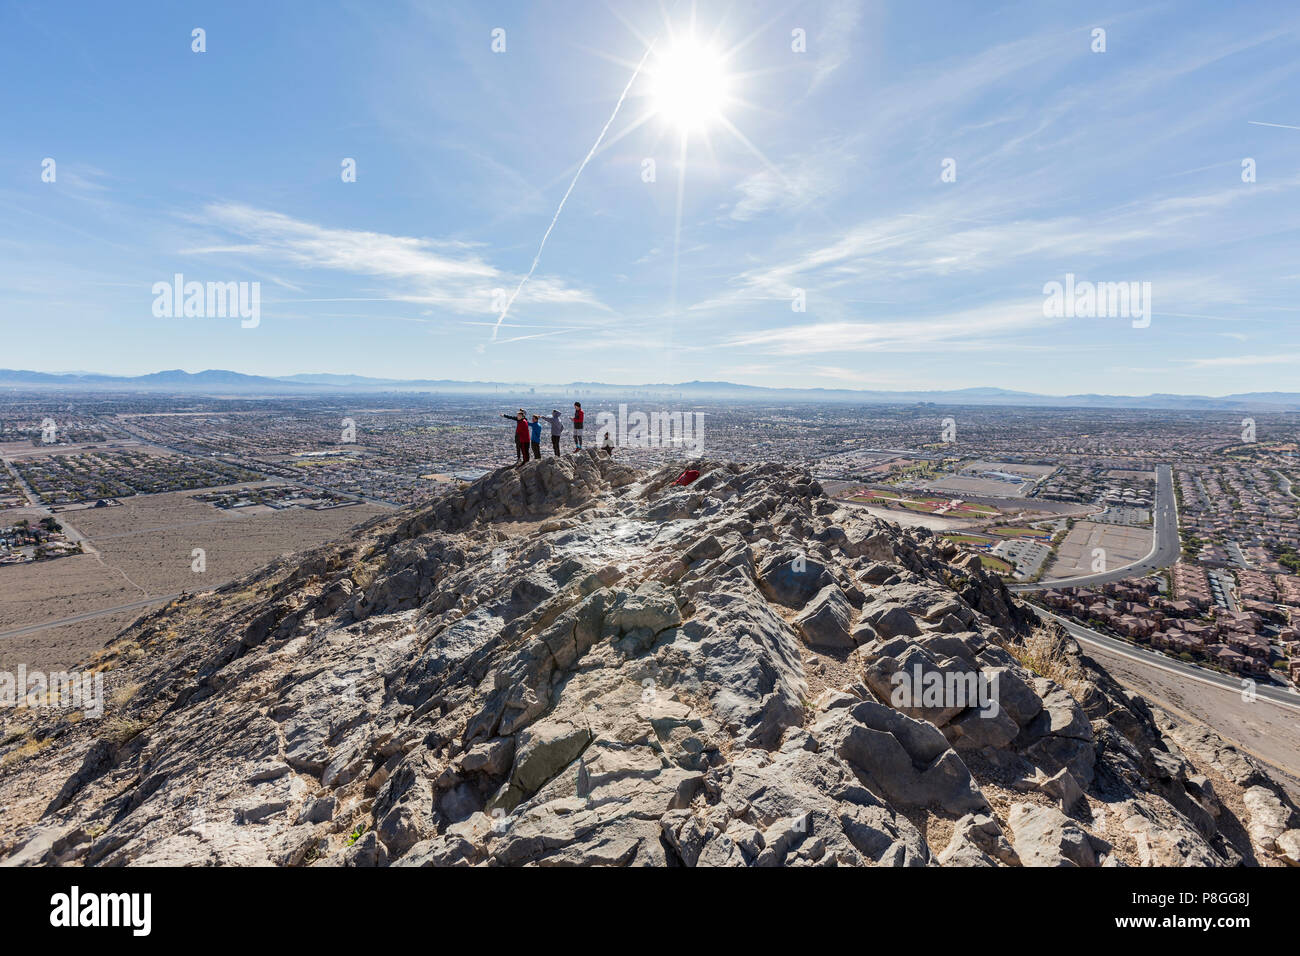 Las Vegas, Nevada, USA - 27 janvier 2018 : Groupe de randonneurs profitez d'une vue sur le désert paysage du haut de la montagne solitaire. Banque D'Images